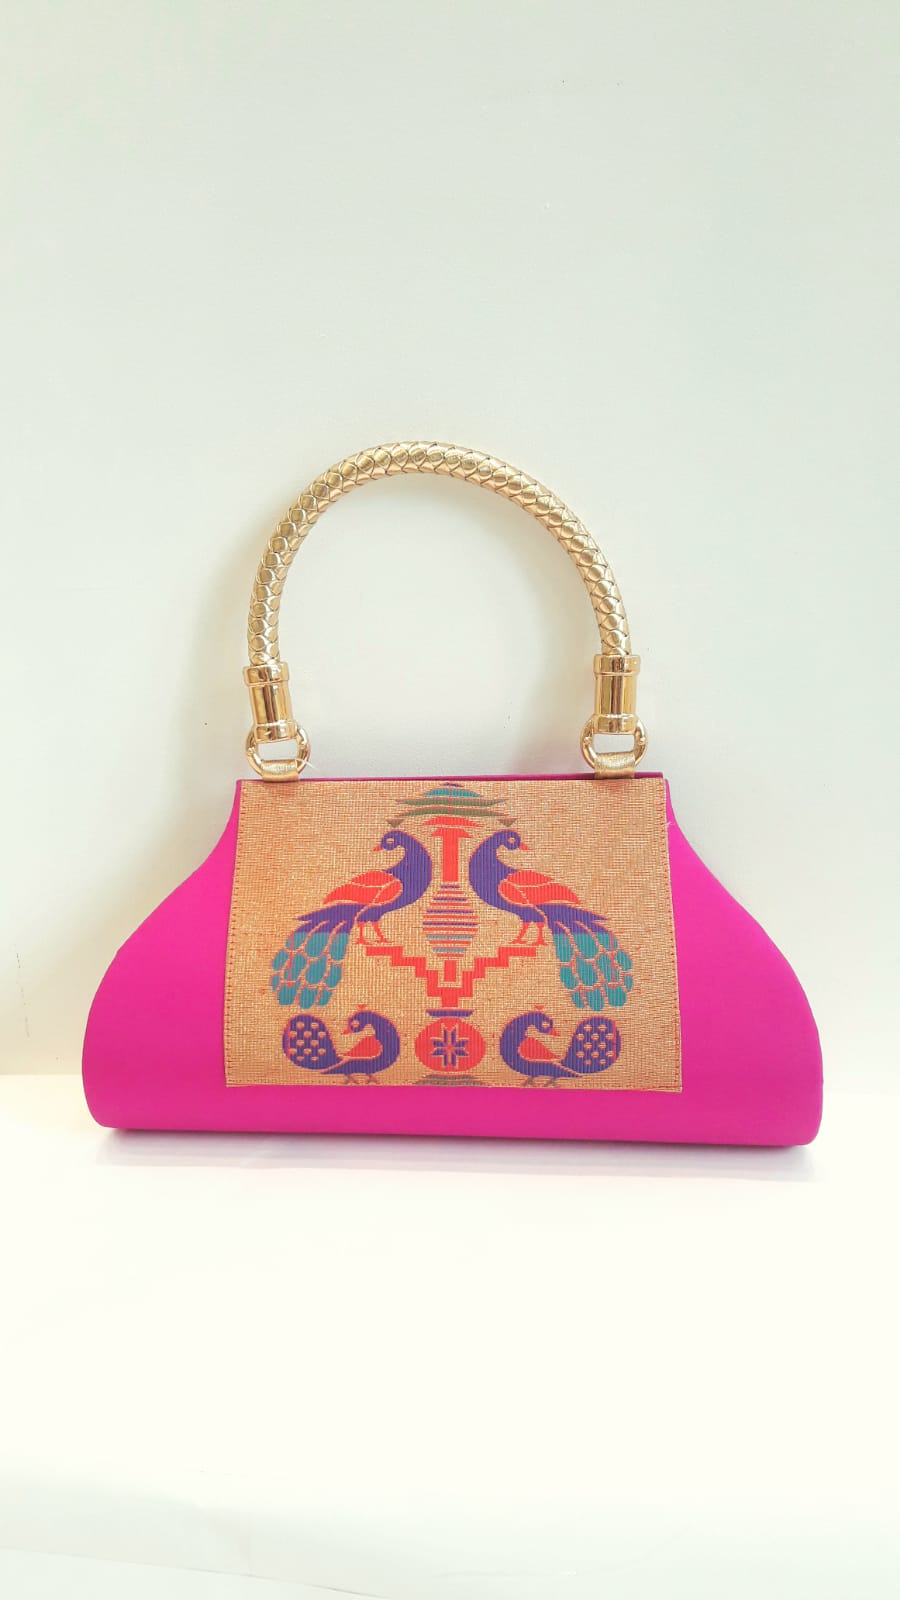 नया मैटेरियल क्लच पर्स नाइस डिज़ाइन इवनिंग बैग - चीन स्पेशल मैटेरियल बैग्स  यह है फैशन बैग कीमत